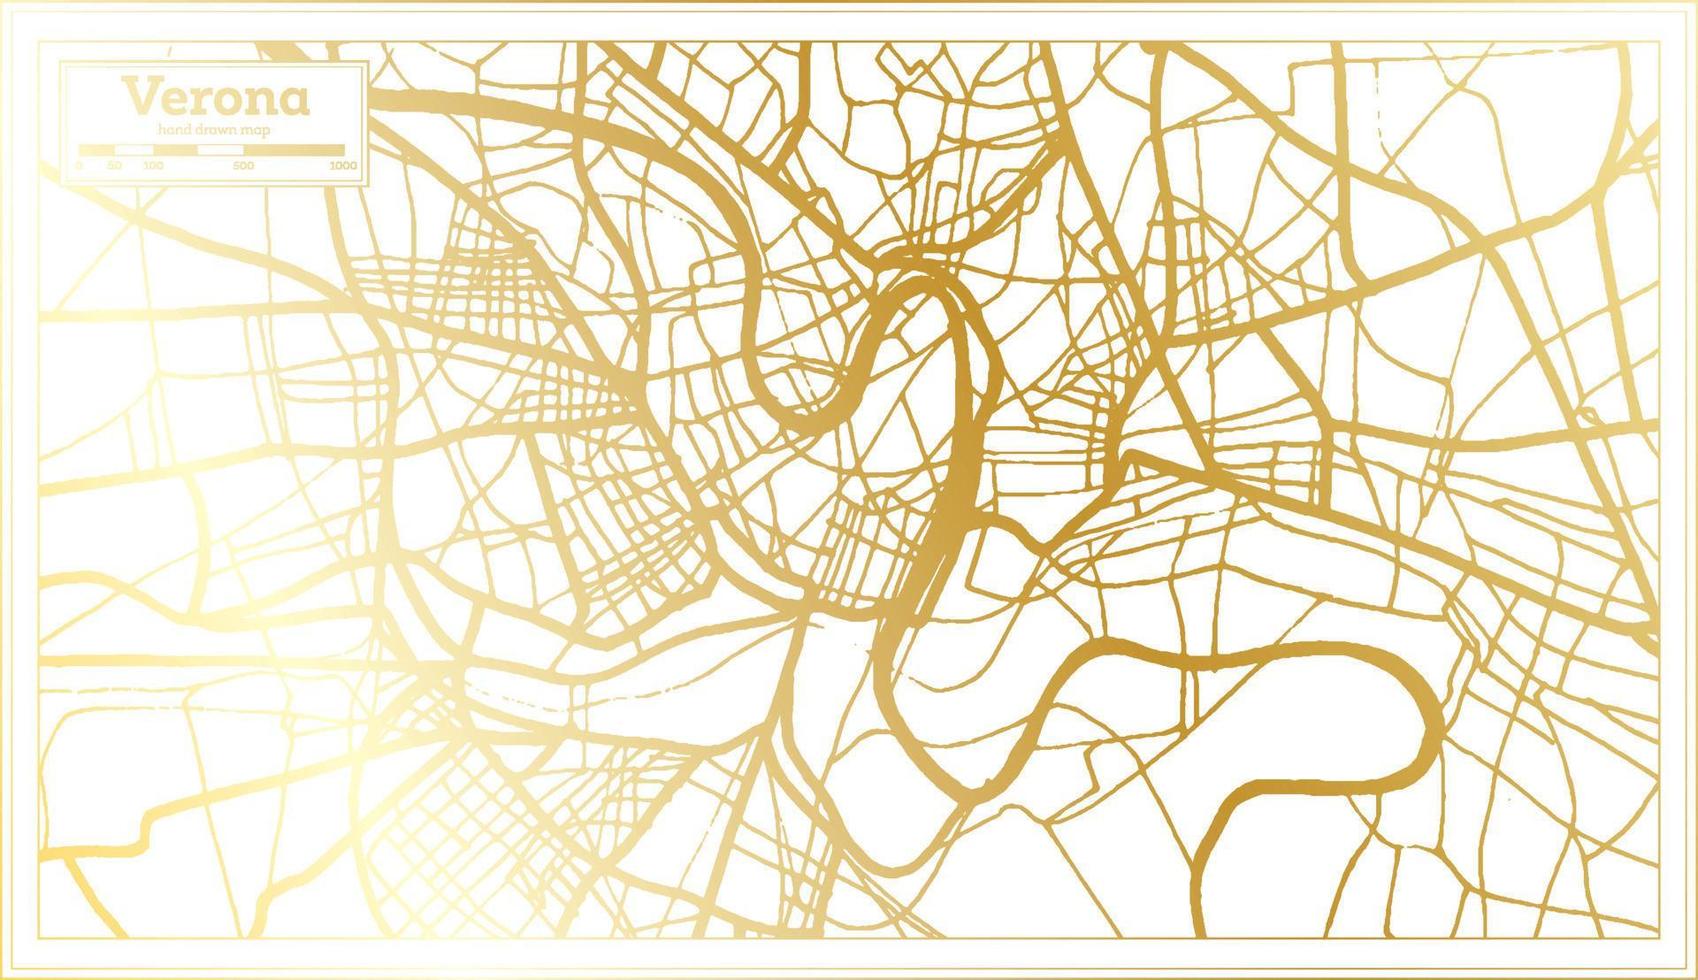 verona Italië stad kaart in retro stijl in gouden kleur. schets kaart. vector